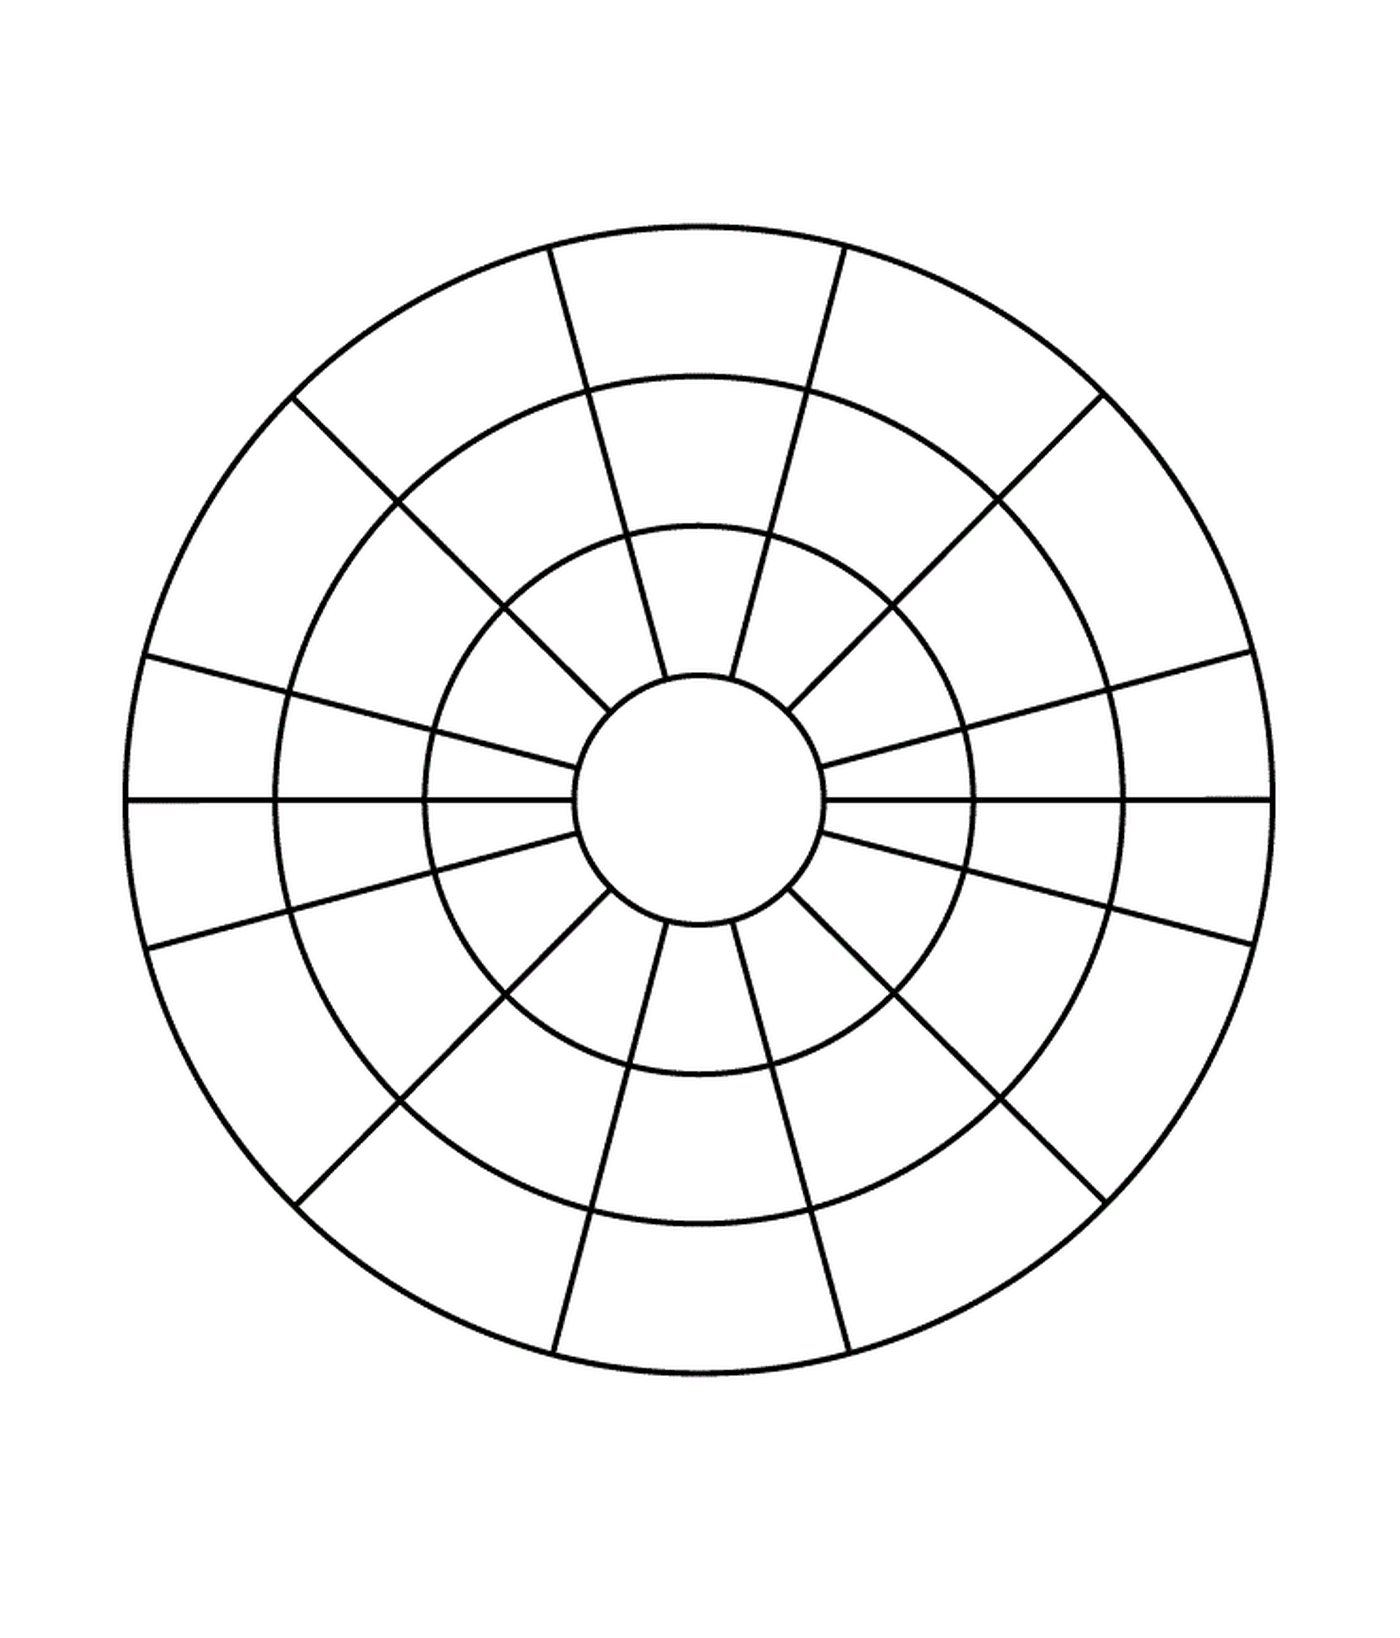  圆形,共分为四节 